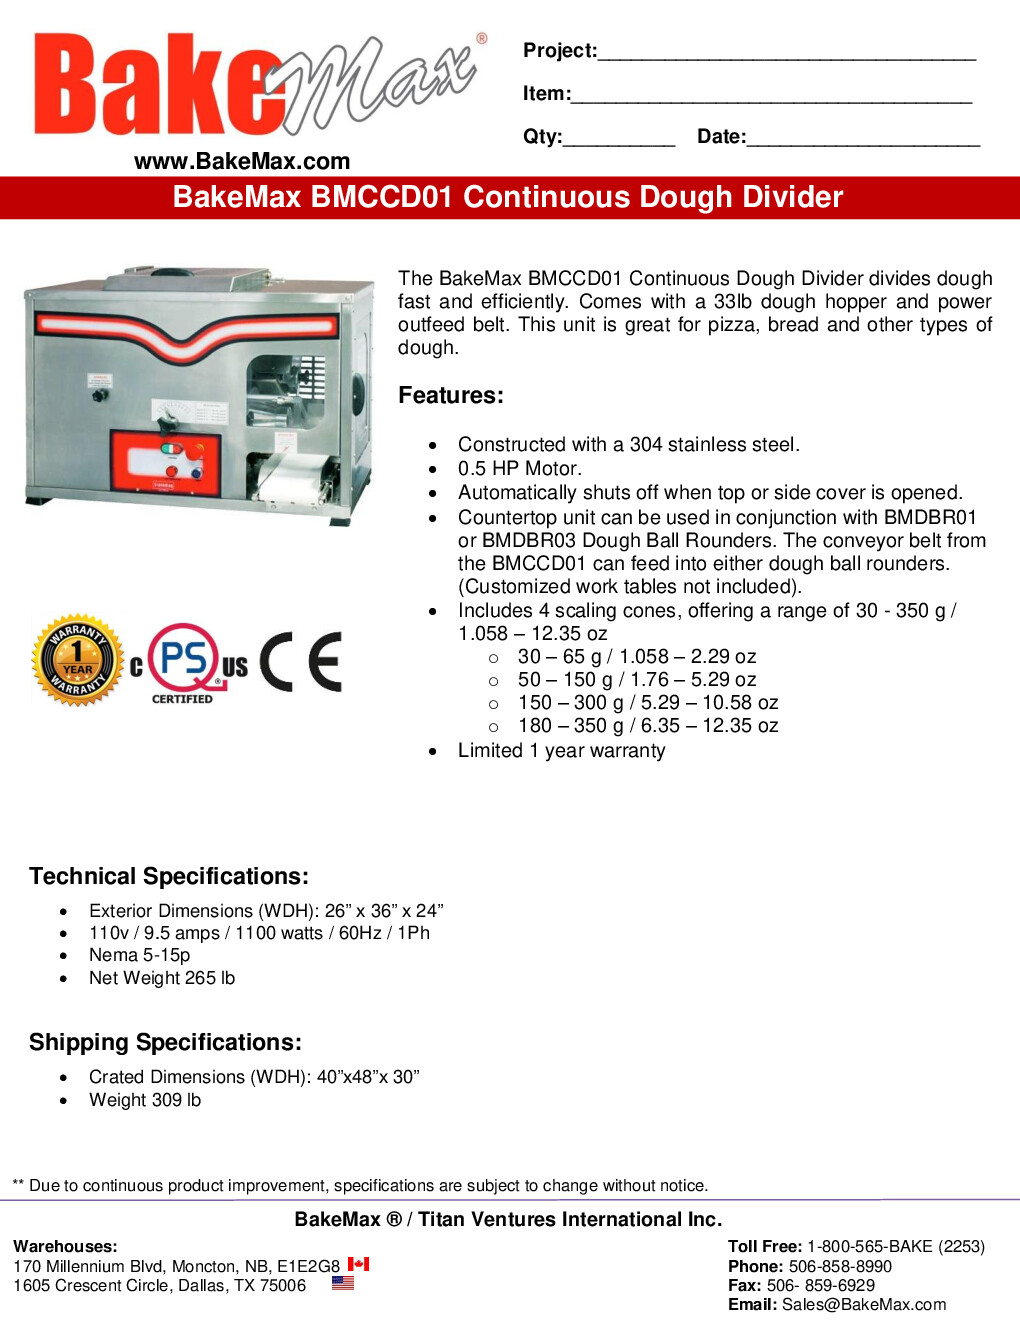 BakeMax BMCCD01 Countertop Automatic Dough Divider, 33 ıbs. Dough Hopper 1.058  to 12.35 oz Portions 1/2 hp